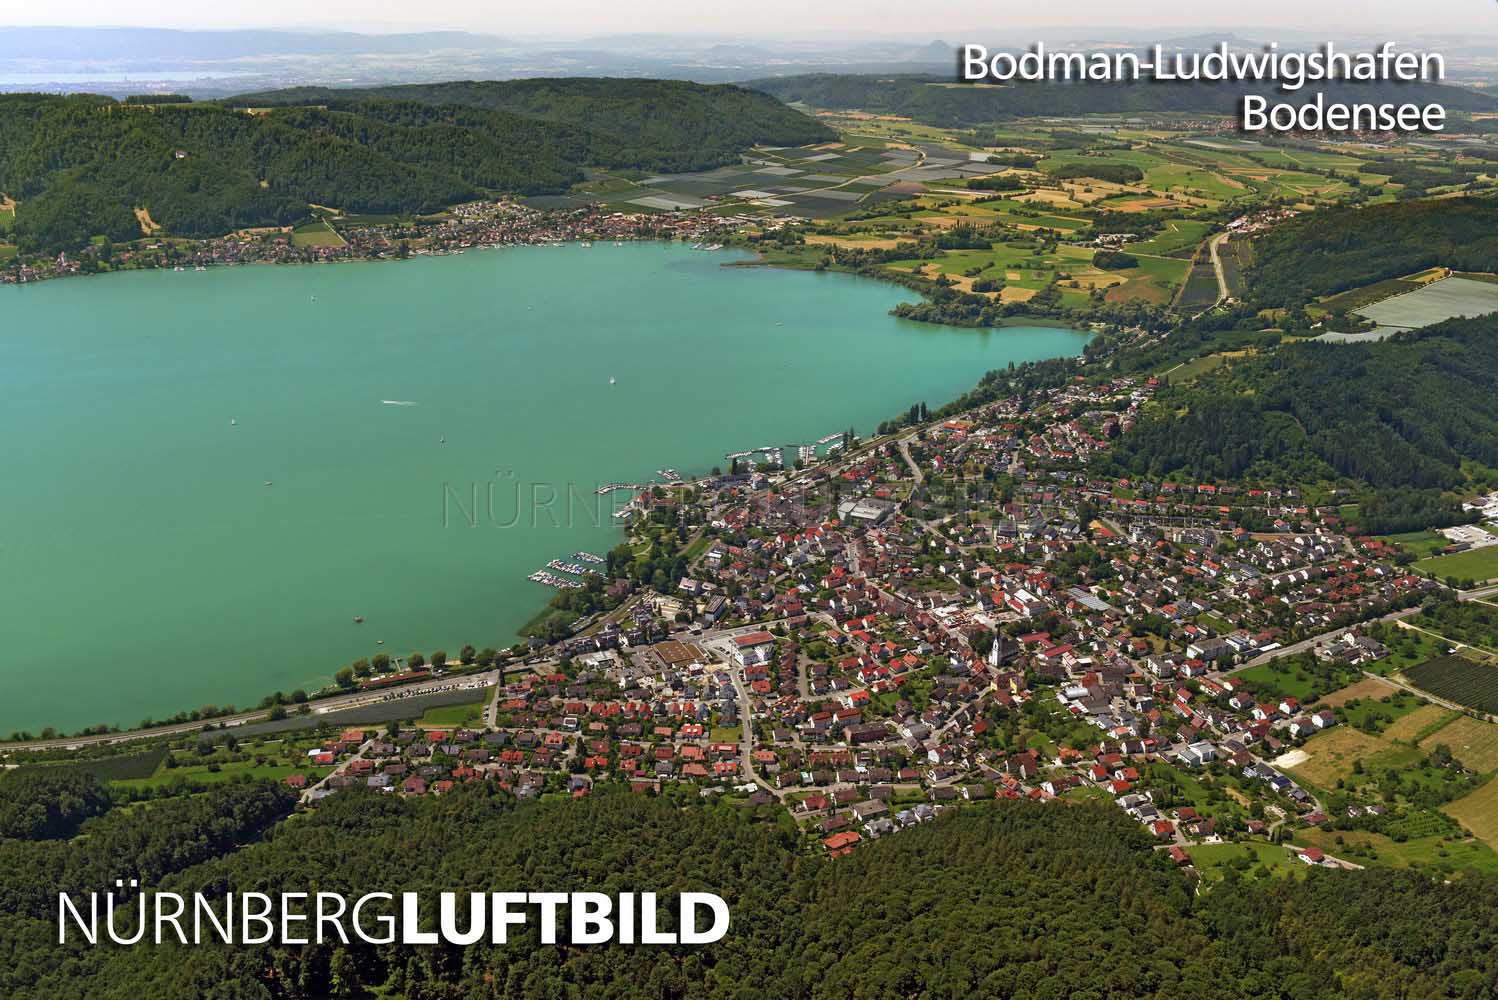 Bodman-Ludwigshafen, Bodensee, Luftbild